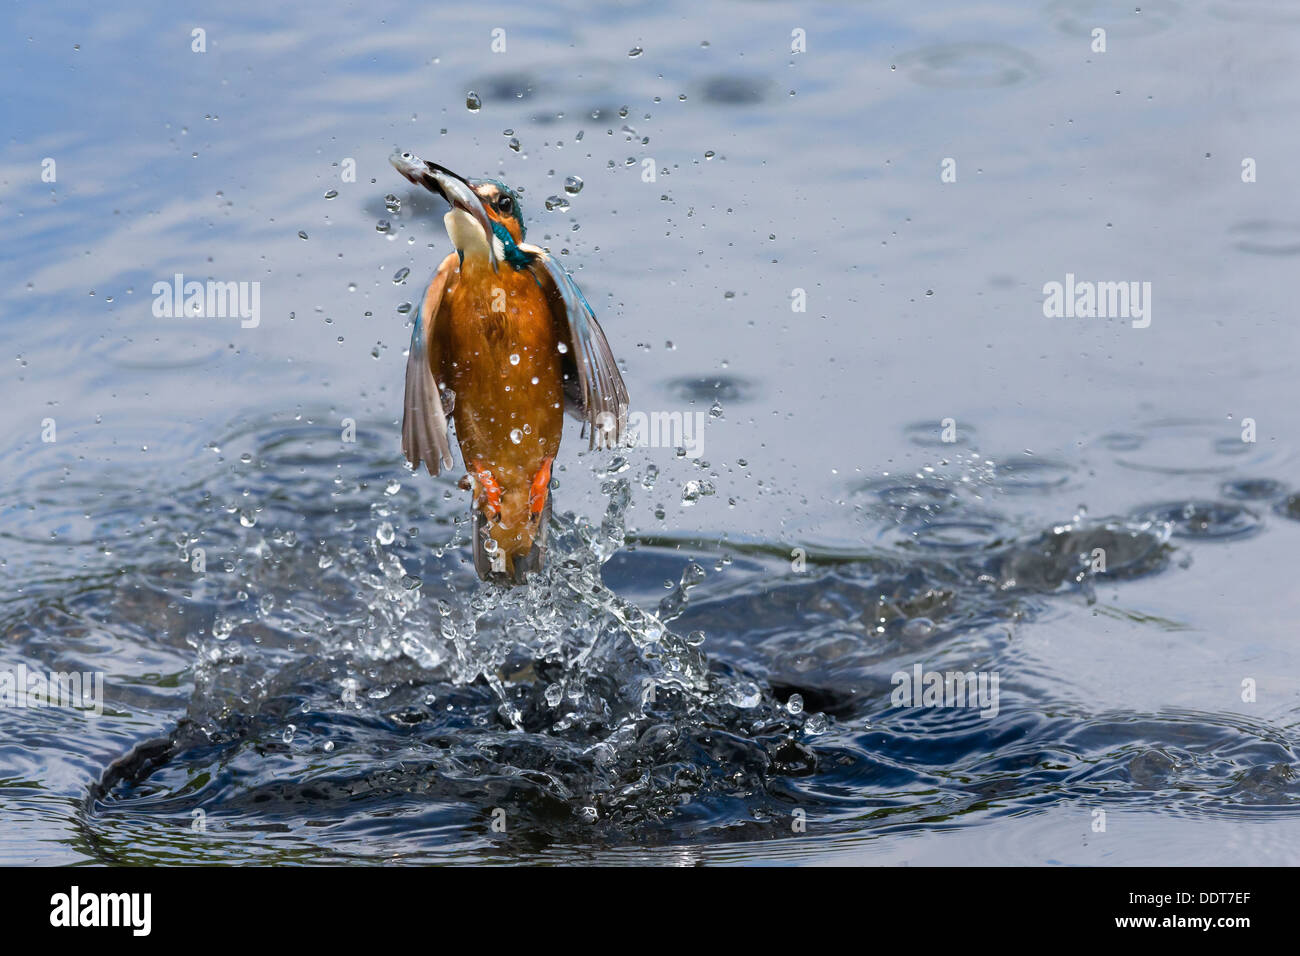 Kingfisher emergiendo de la superficie del agua con un pez Foto de stock